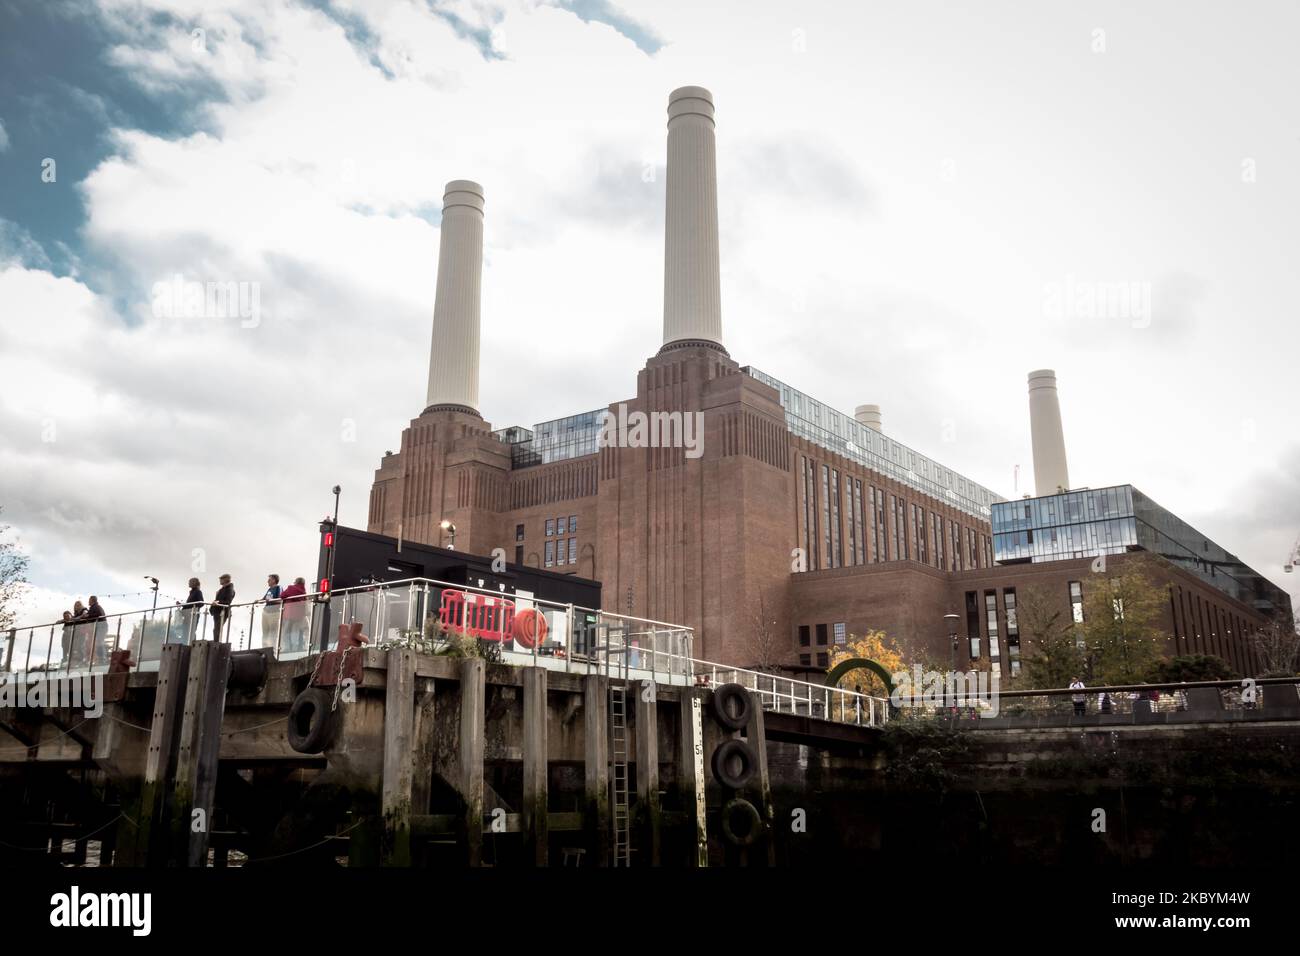 La nouvelle station électrique Battersea Power Station, Nine Elms, Vauxhall, Londres, Angleterre, ROYAUME-UNI Banque D'Images